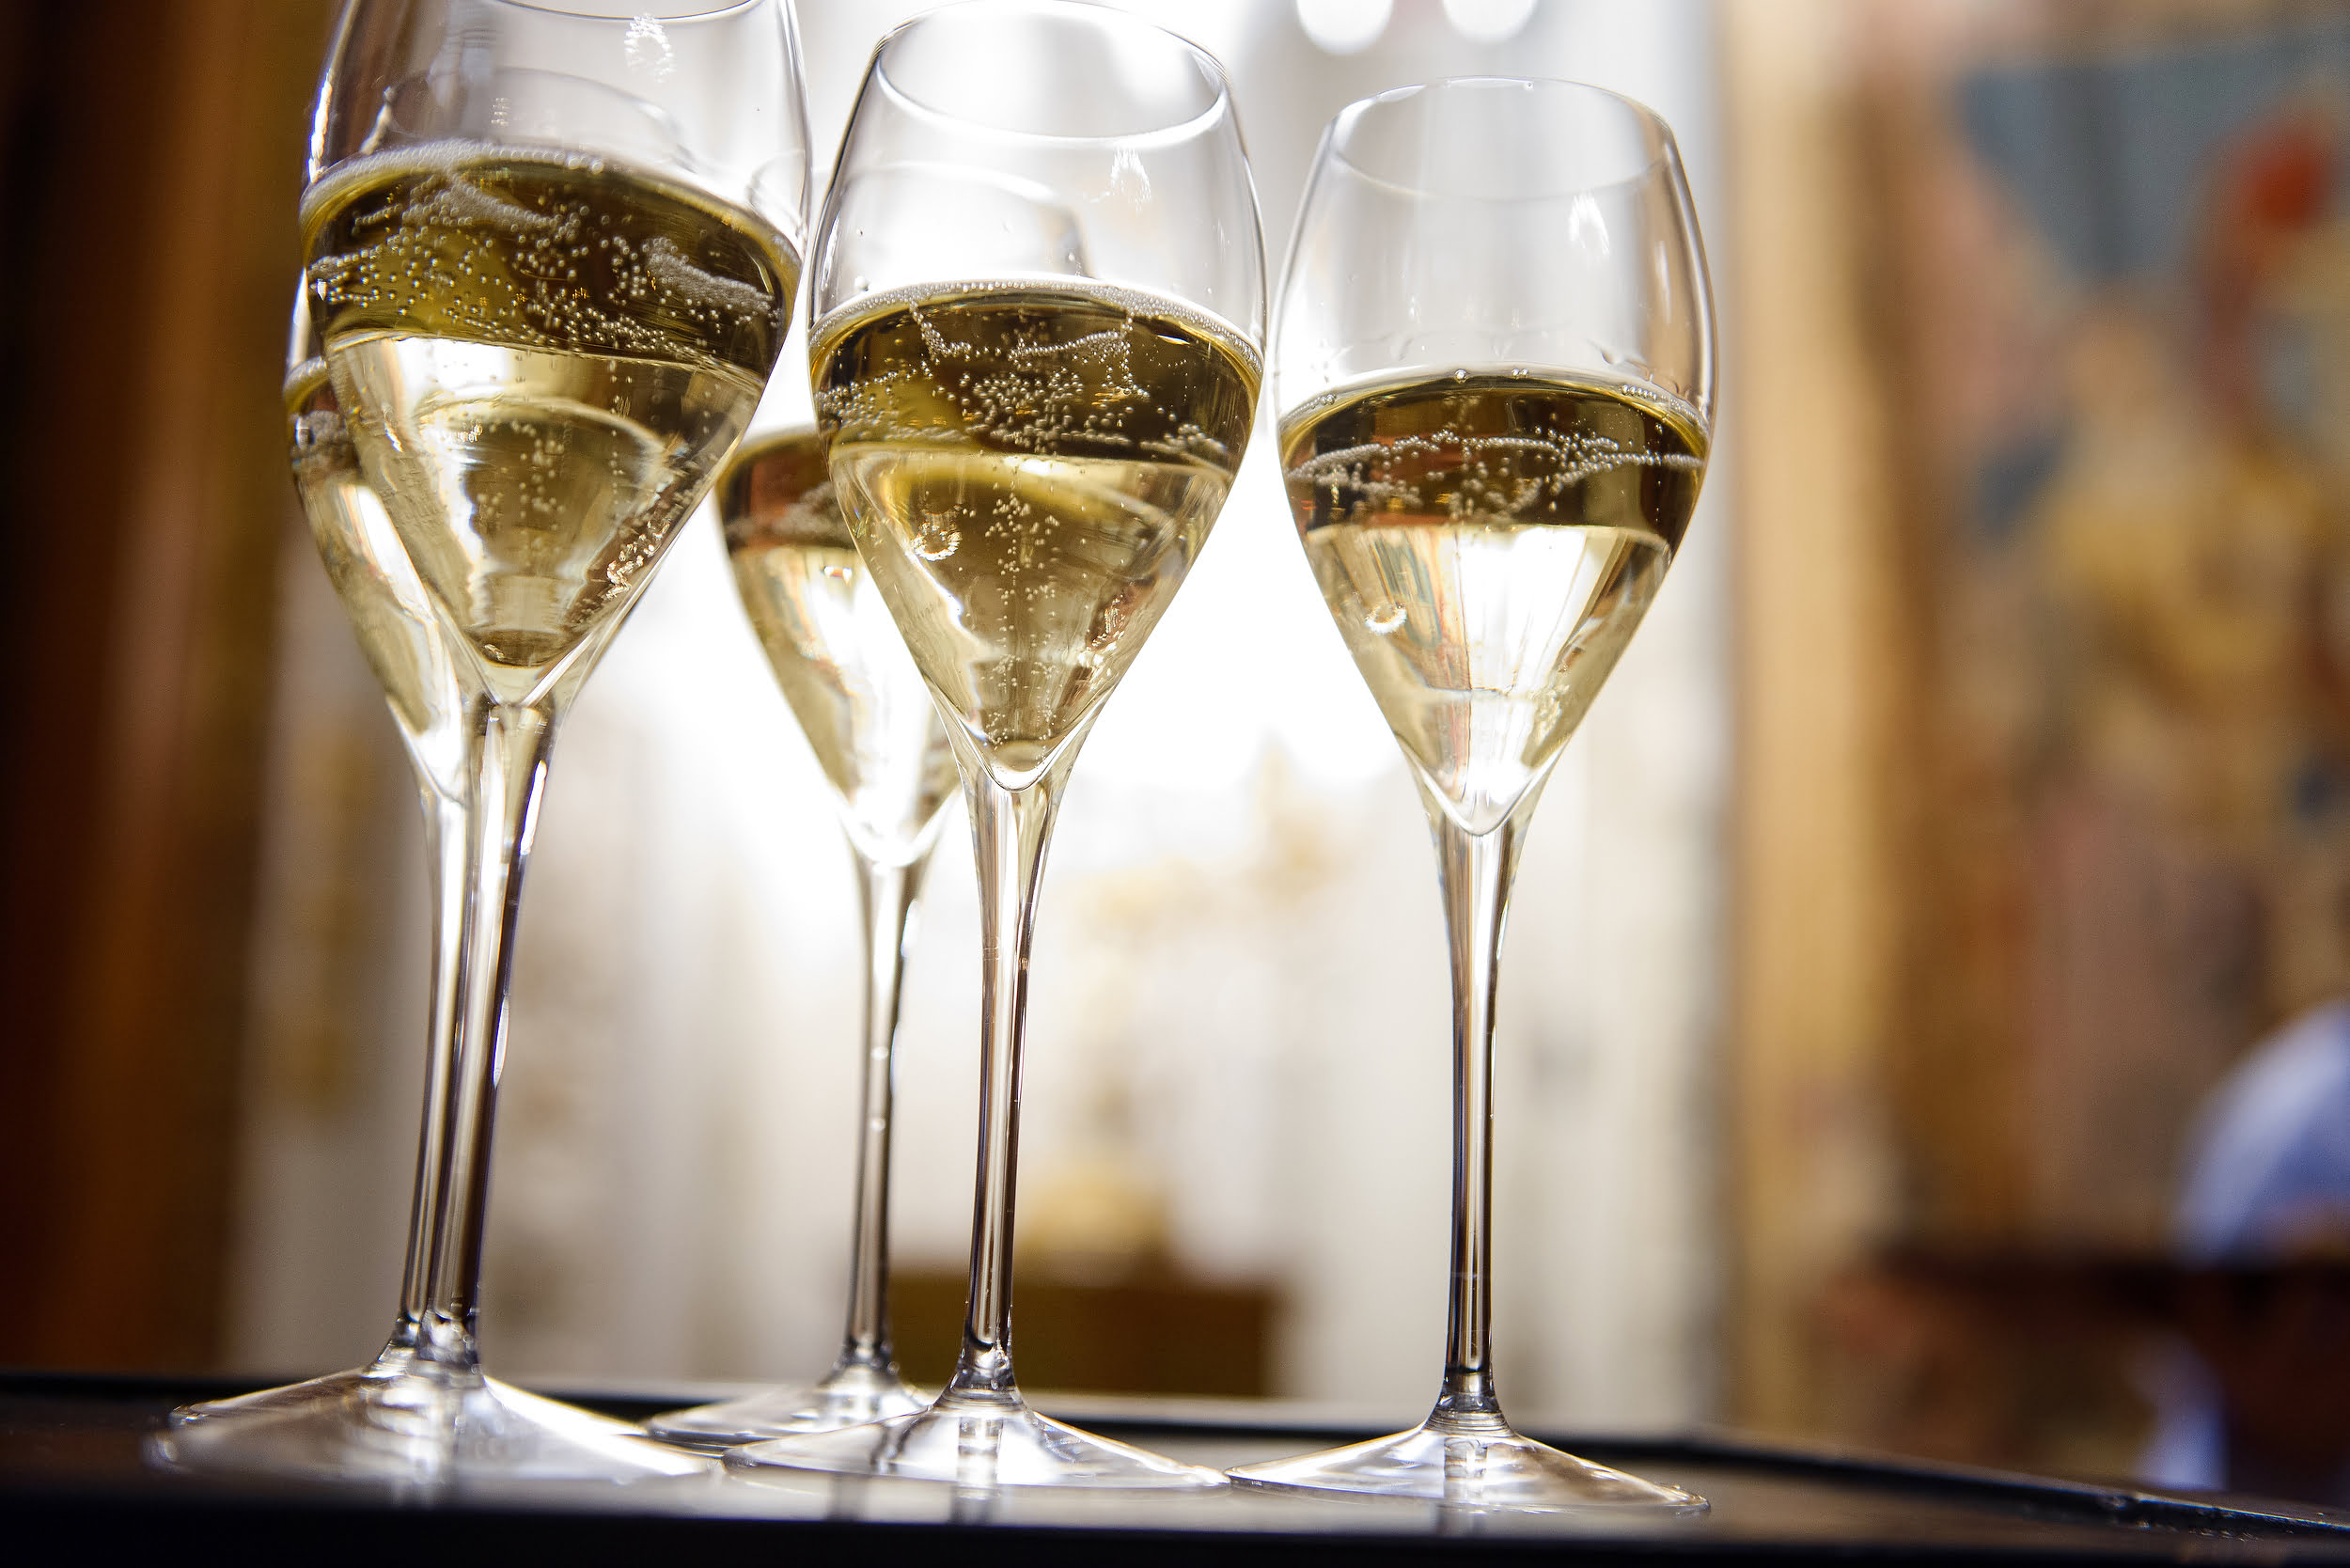 “Nonostante la crisi, lo champagne è rimasto nel cuore dei consumatori di tutto il mondo”